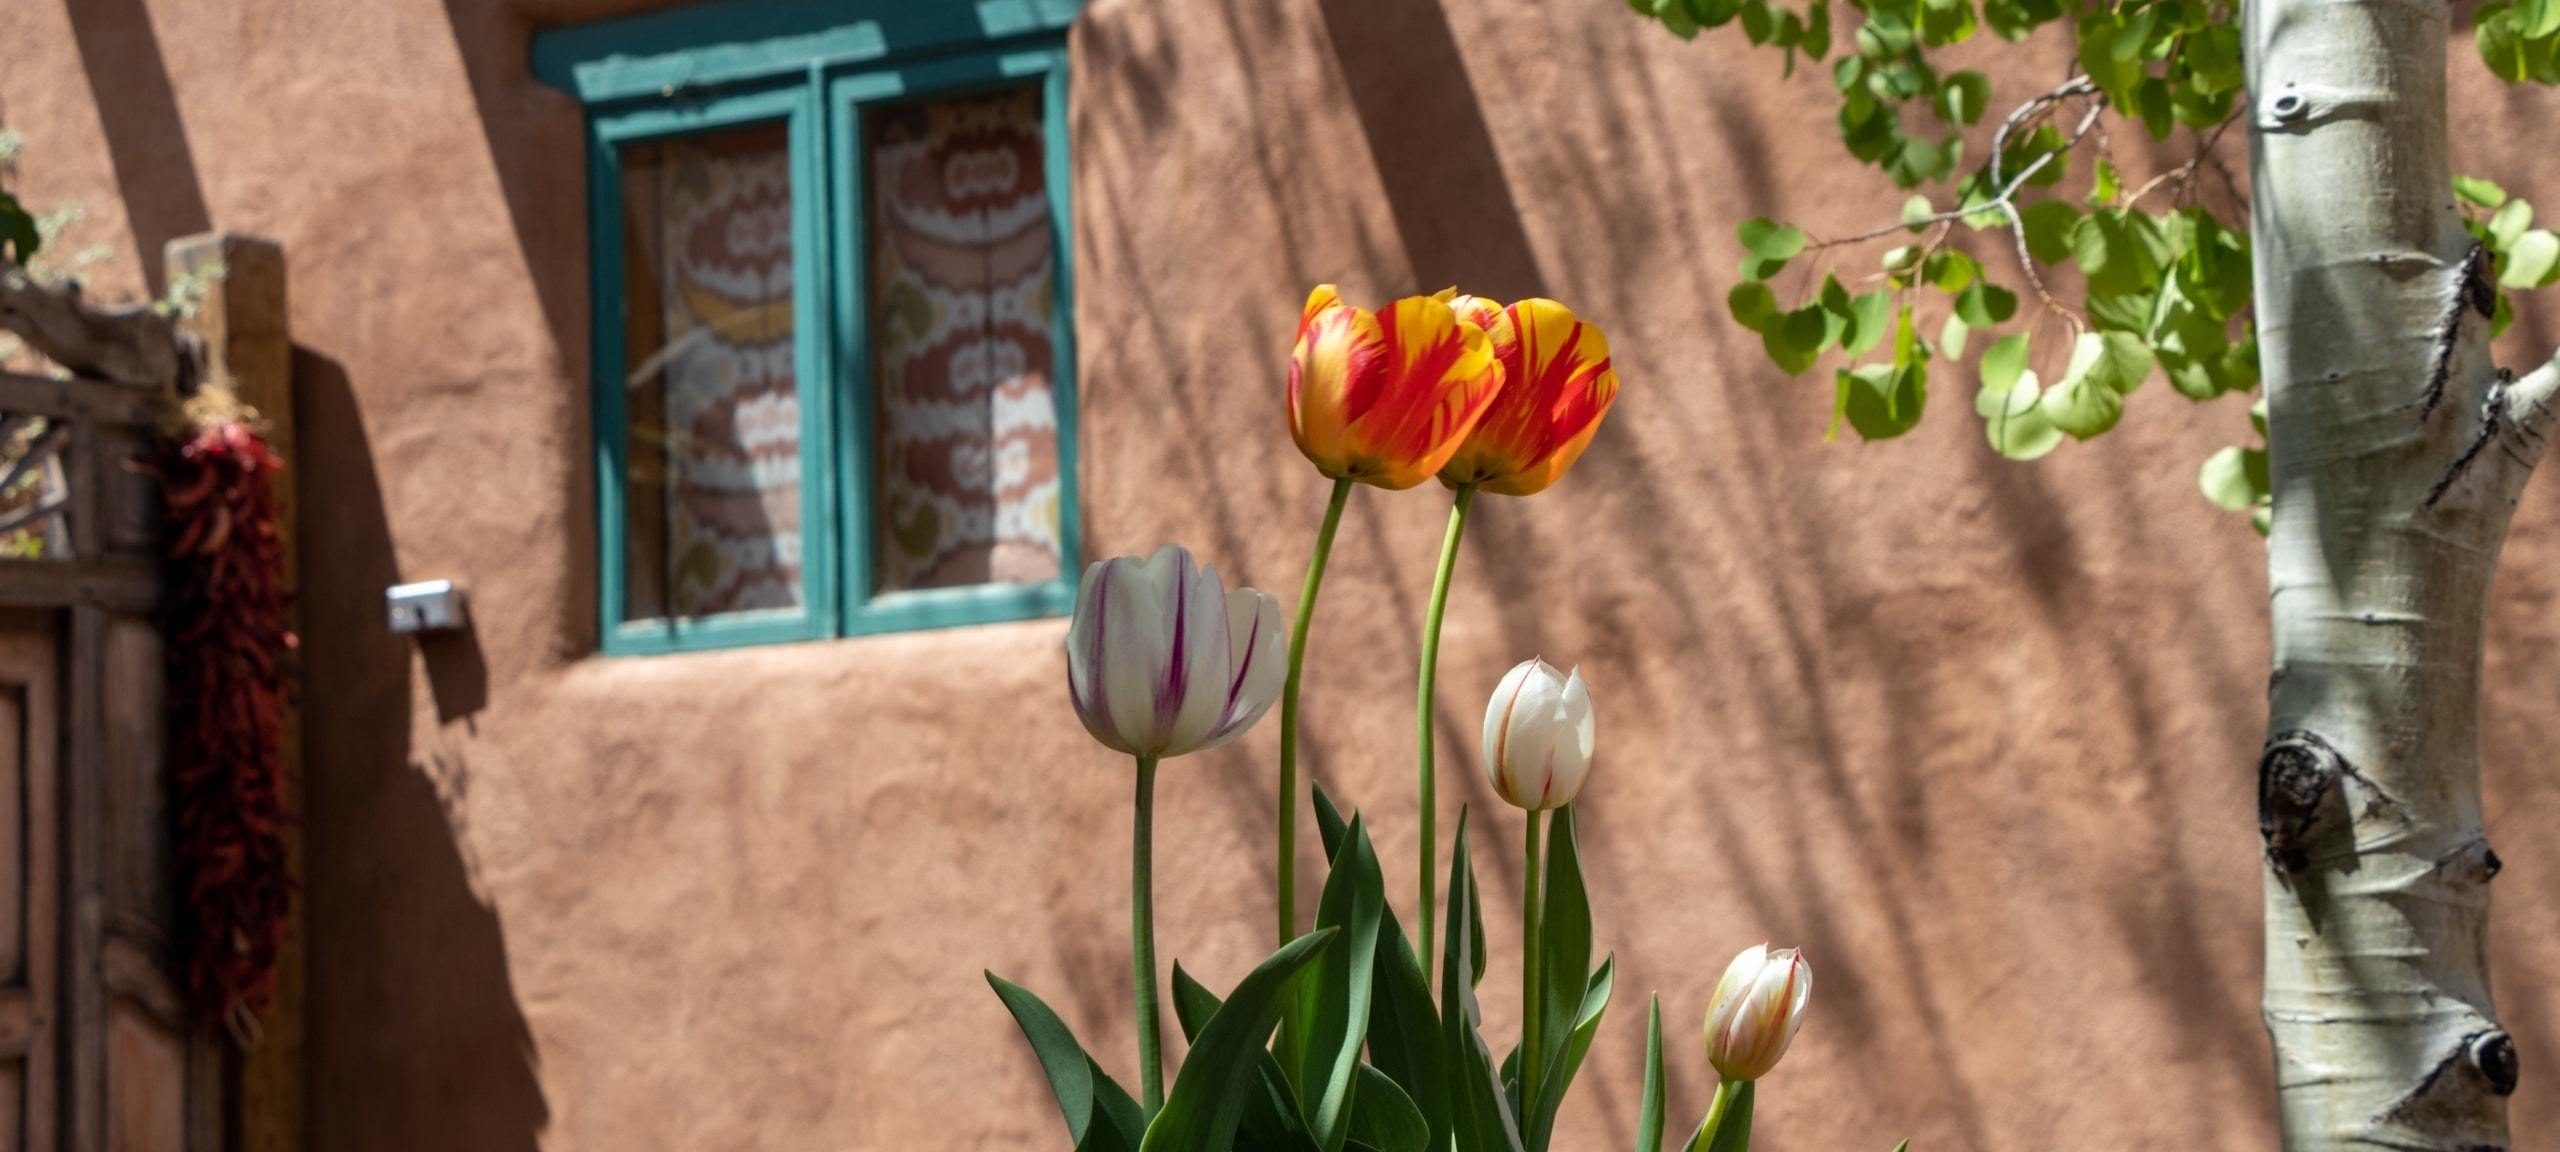 Tulips outside of Adobe home in Santa Fe, NM